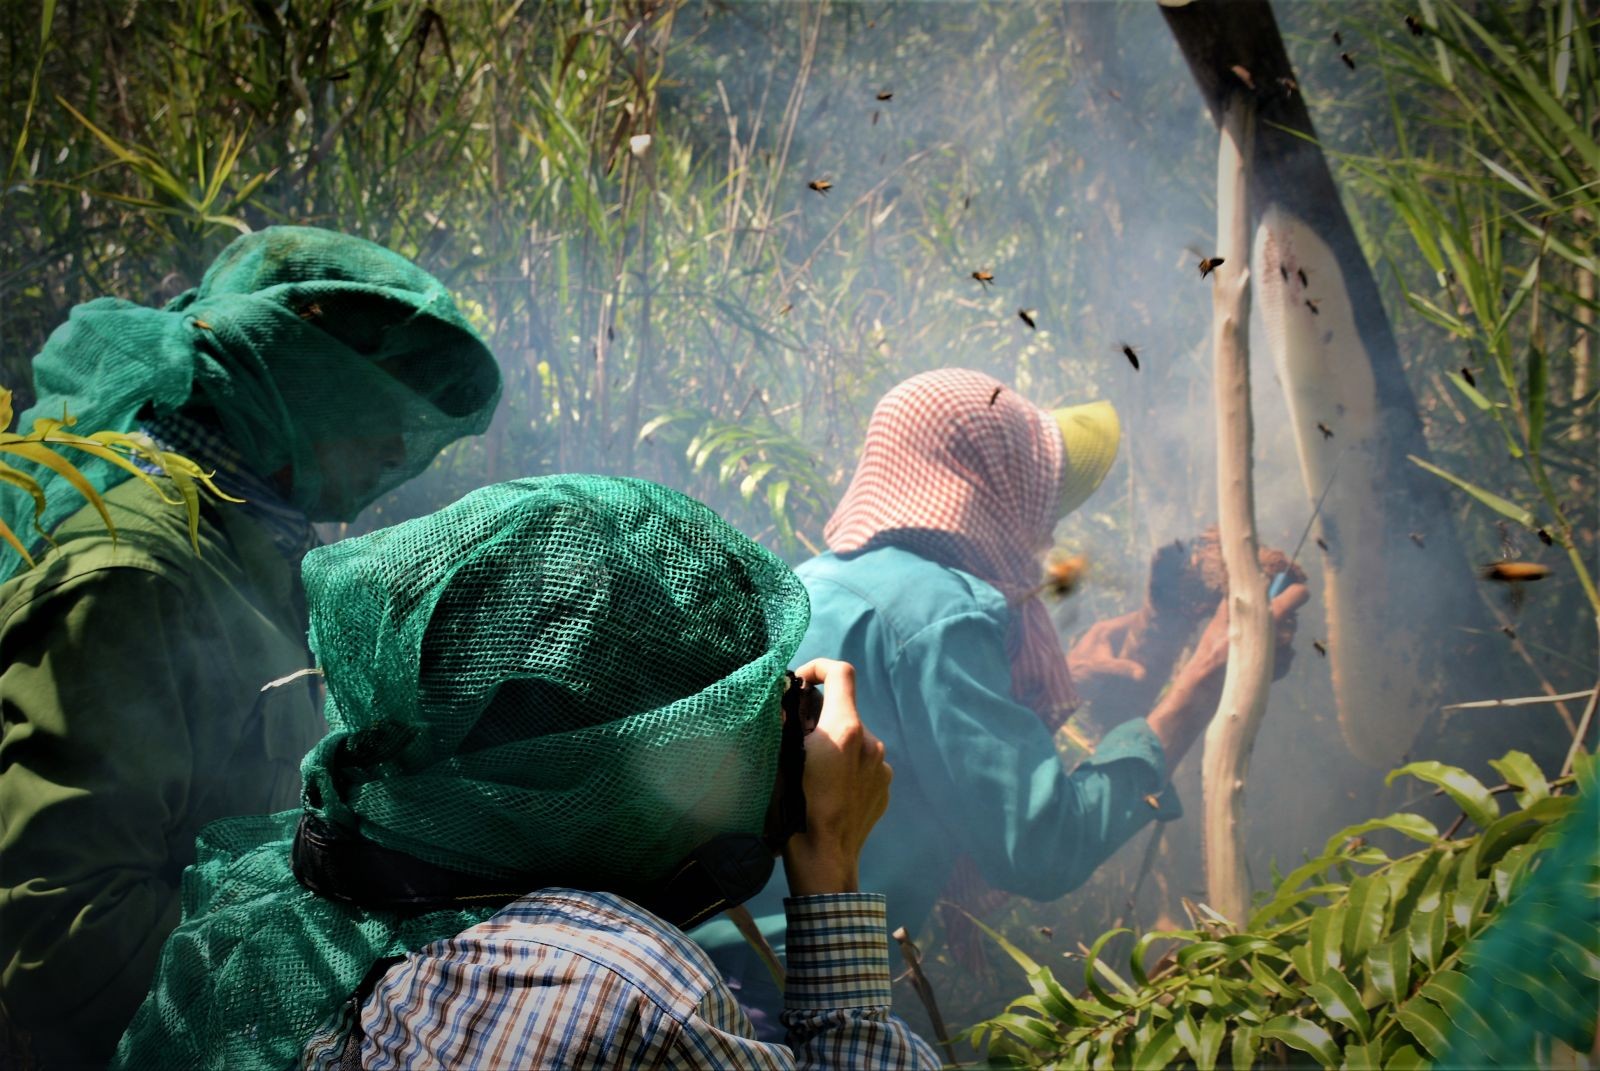 Nghề gác kèo ong là nghề rất đặc trưng của người dân Cà Mau.